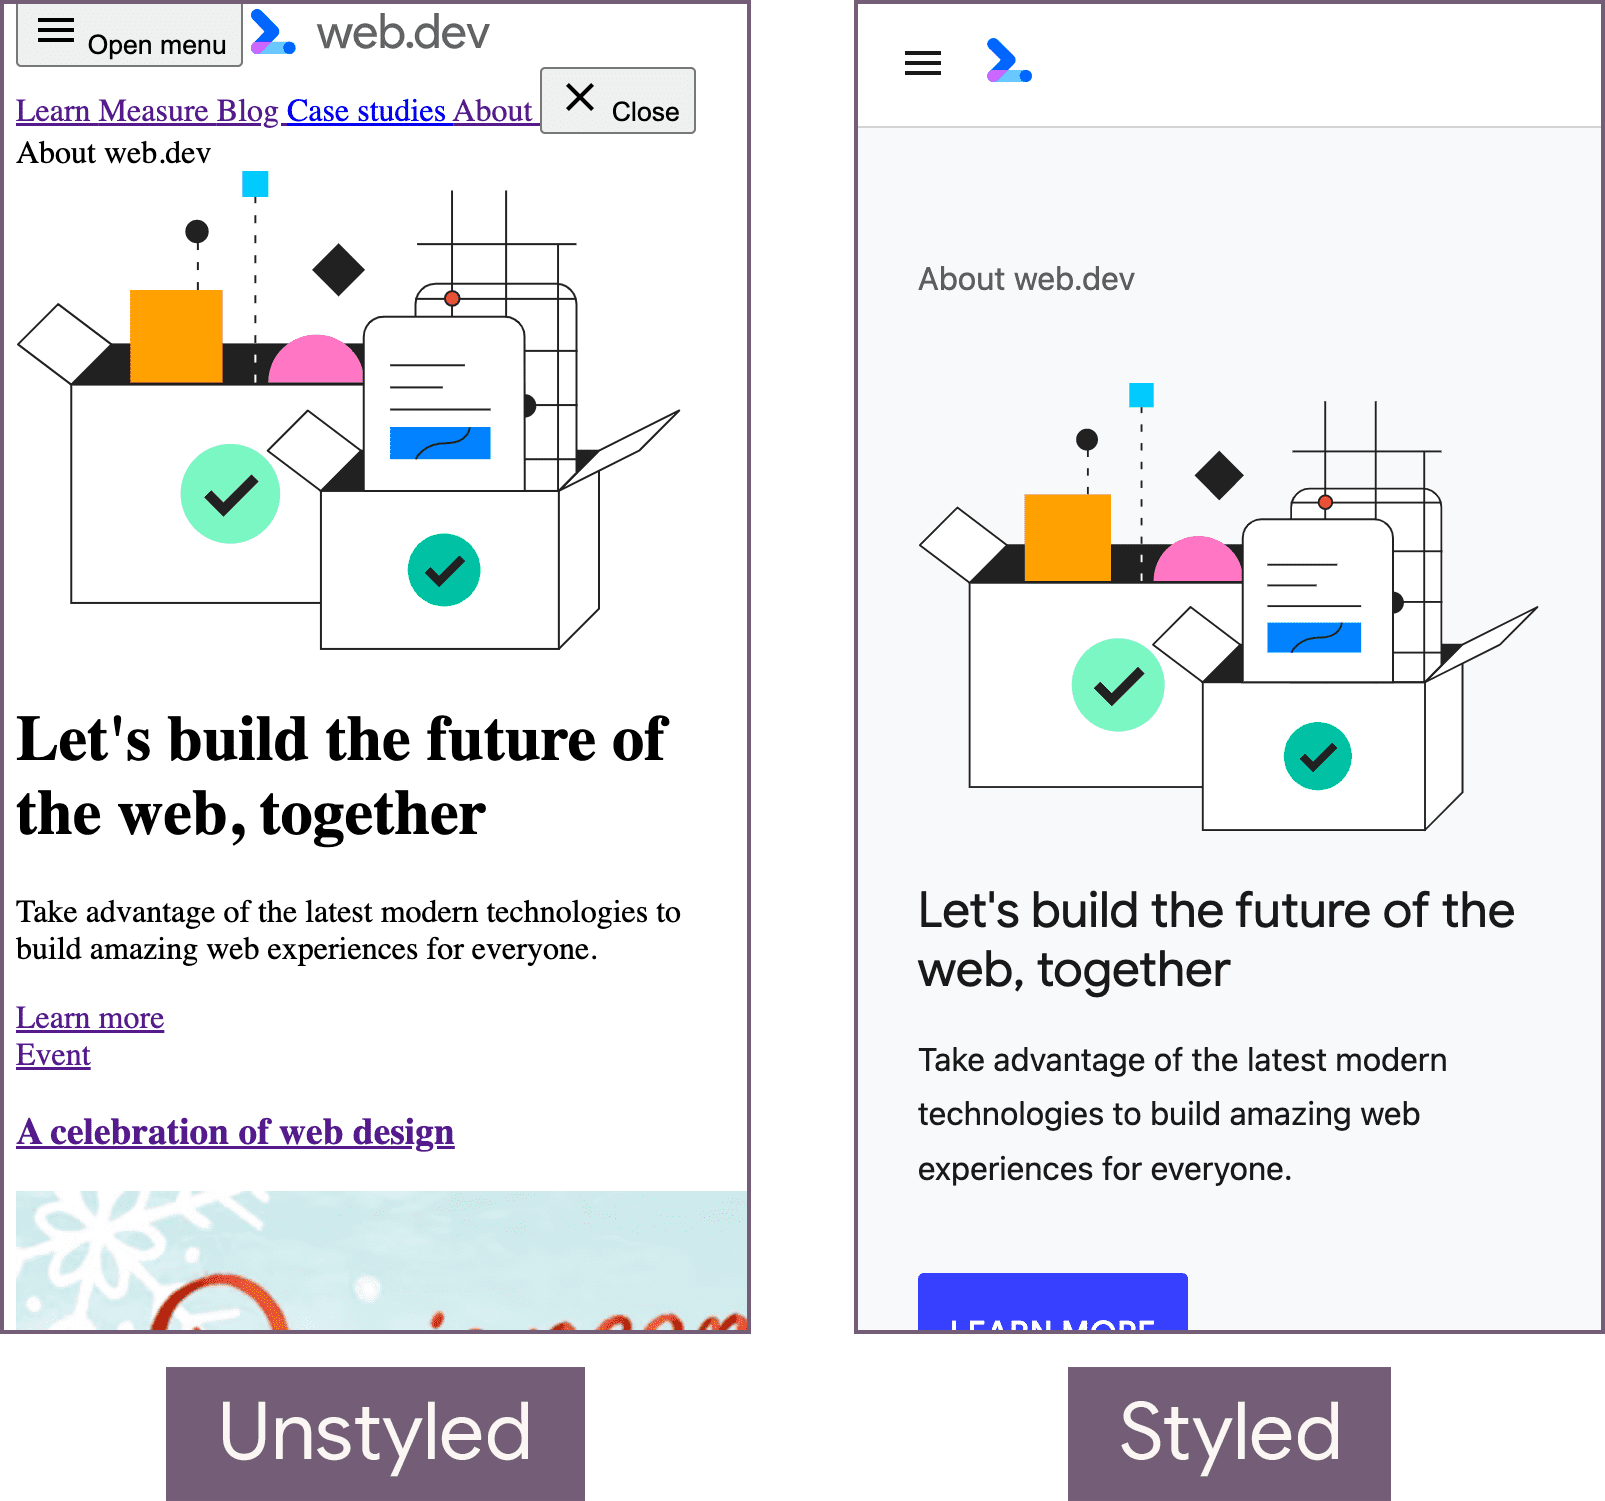 Página inicial de web.dev em um estado sem estilo (à esquerda) e sem estilo (à direita).